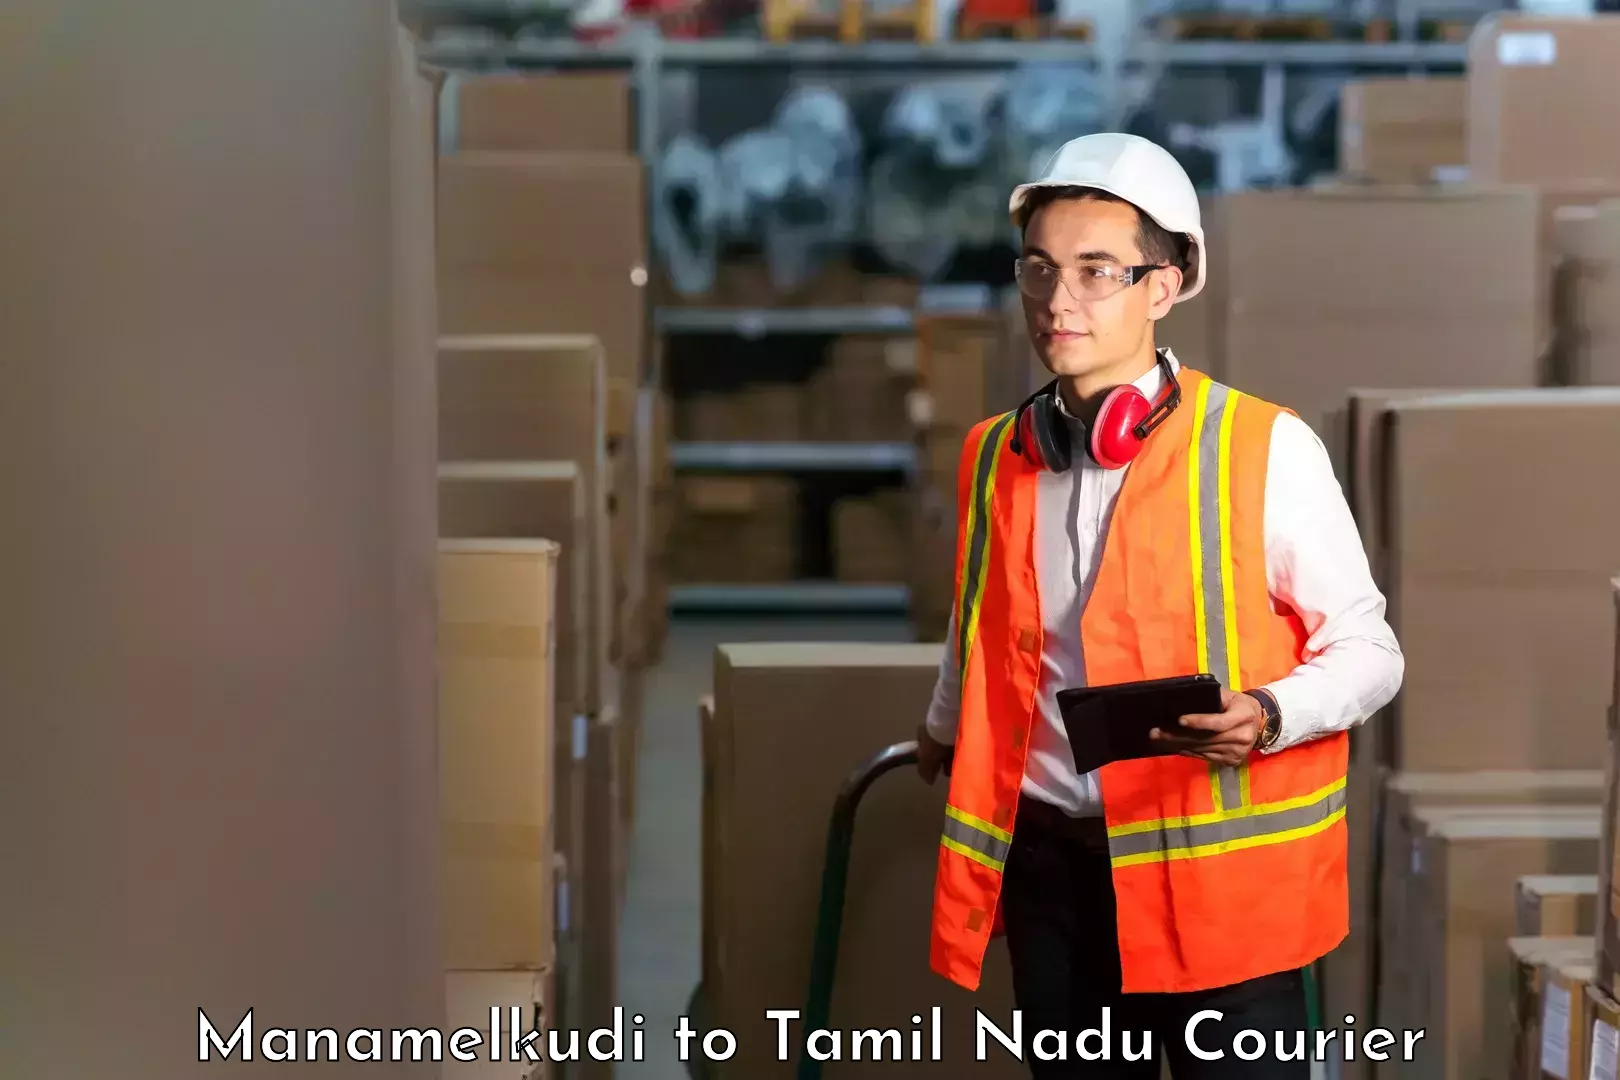 Cost-effective courier options Manamelkudi to IIIT Tiruchirappalli